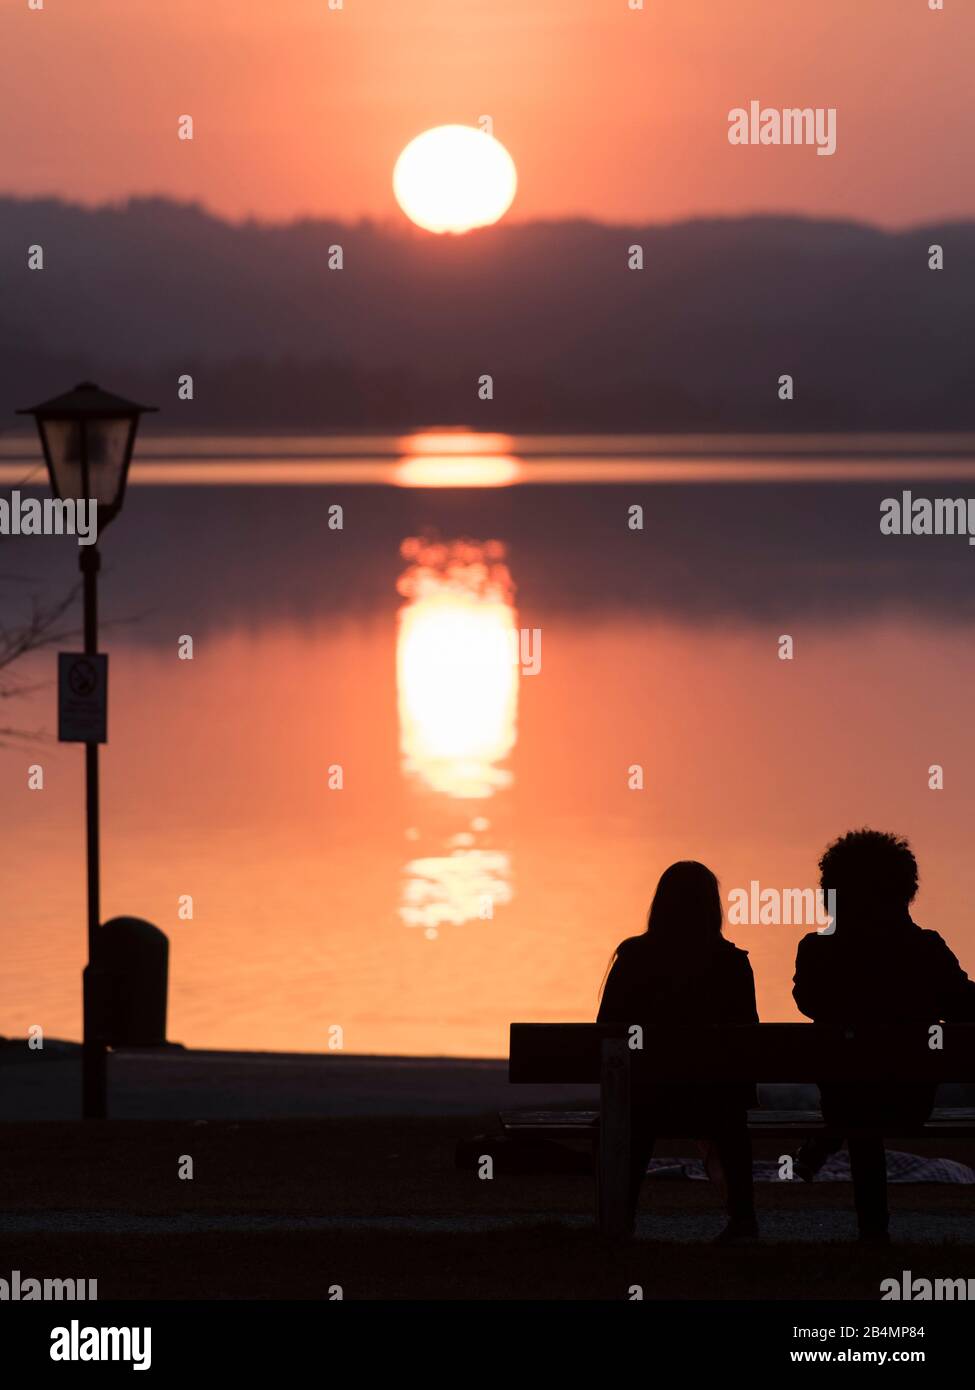 Estate in Baviera. Impressioni dai piedi delle Alpi: Sagome di due persone al lago Staffelsee al tramonto Foto Stock